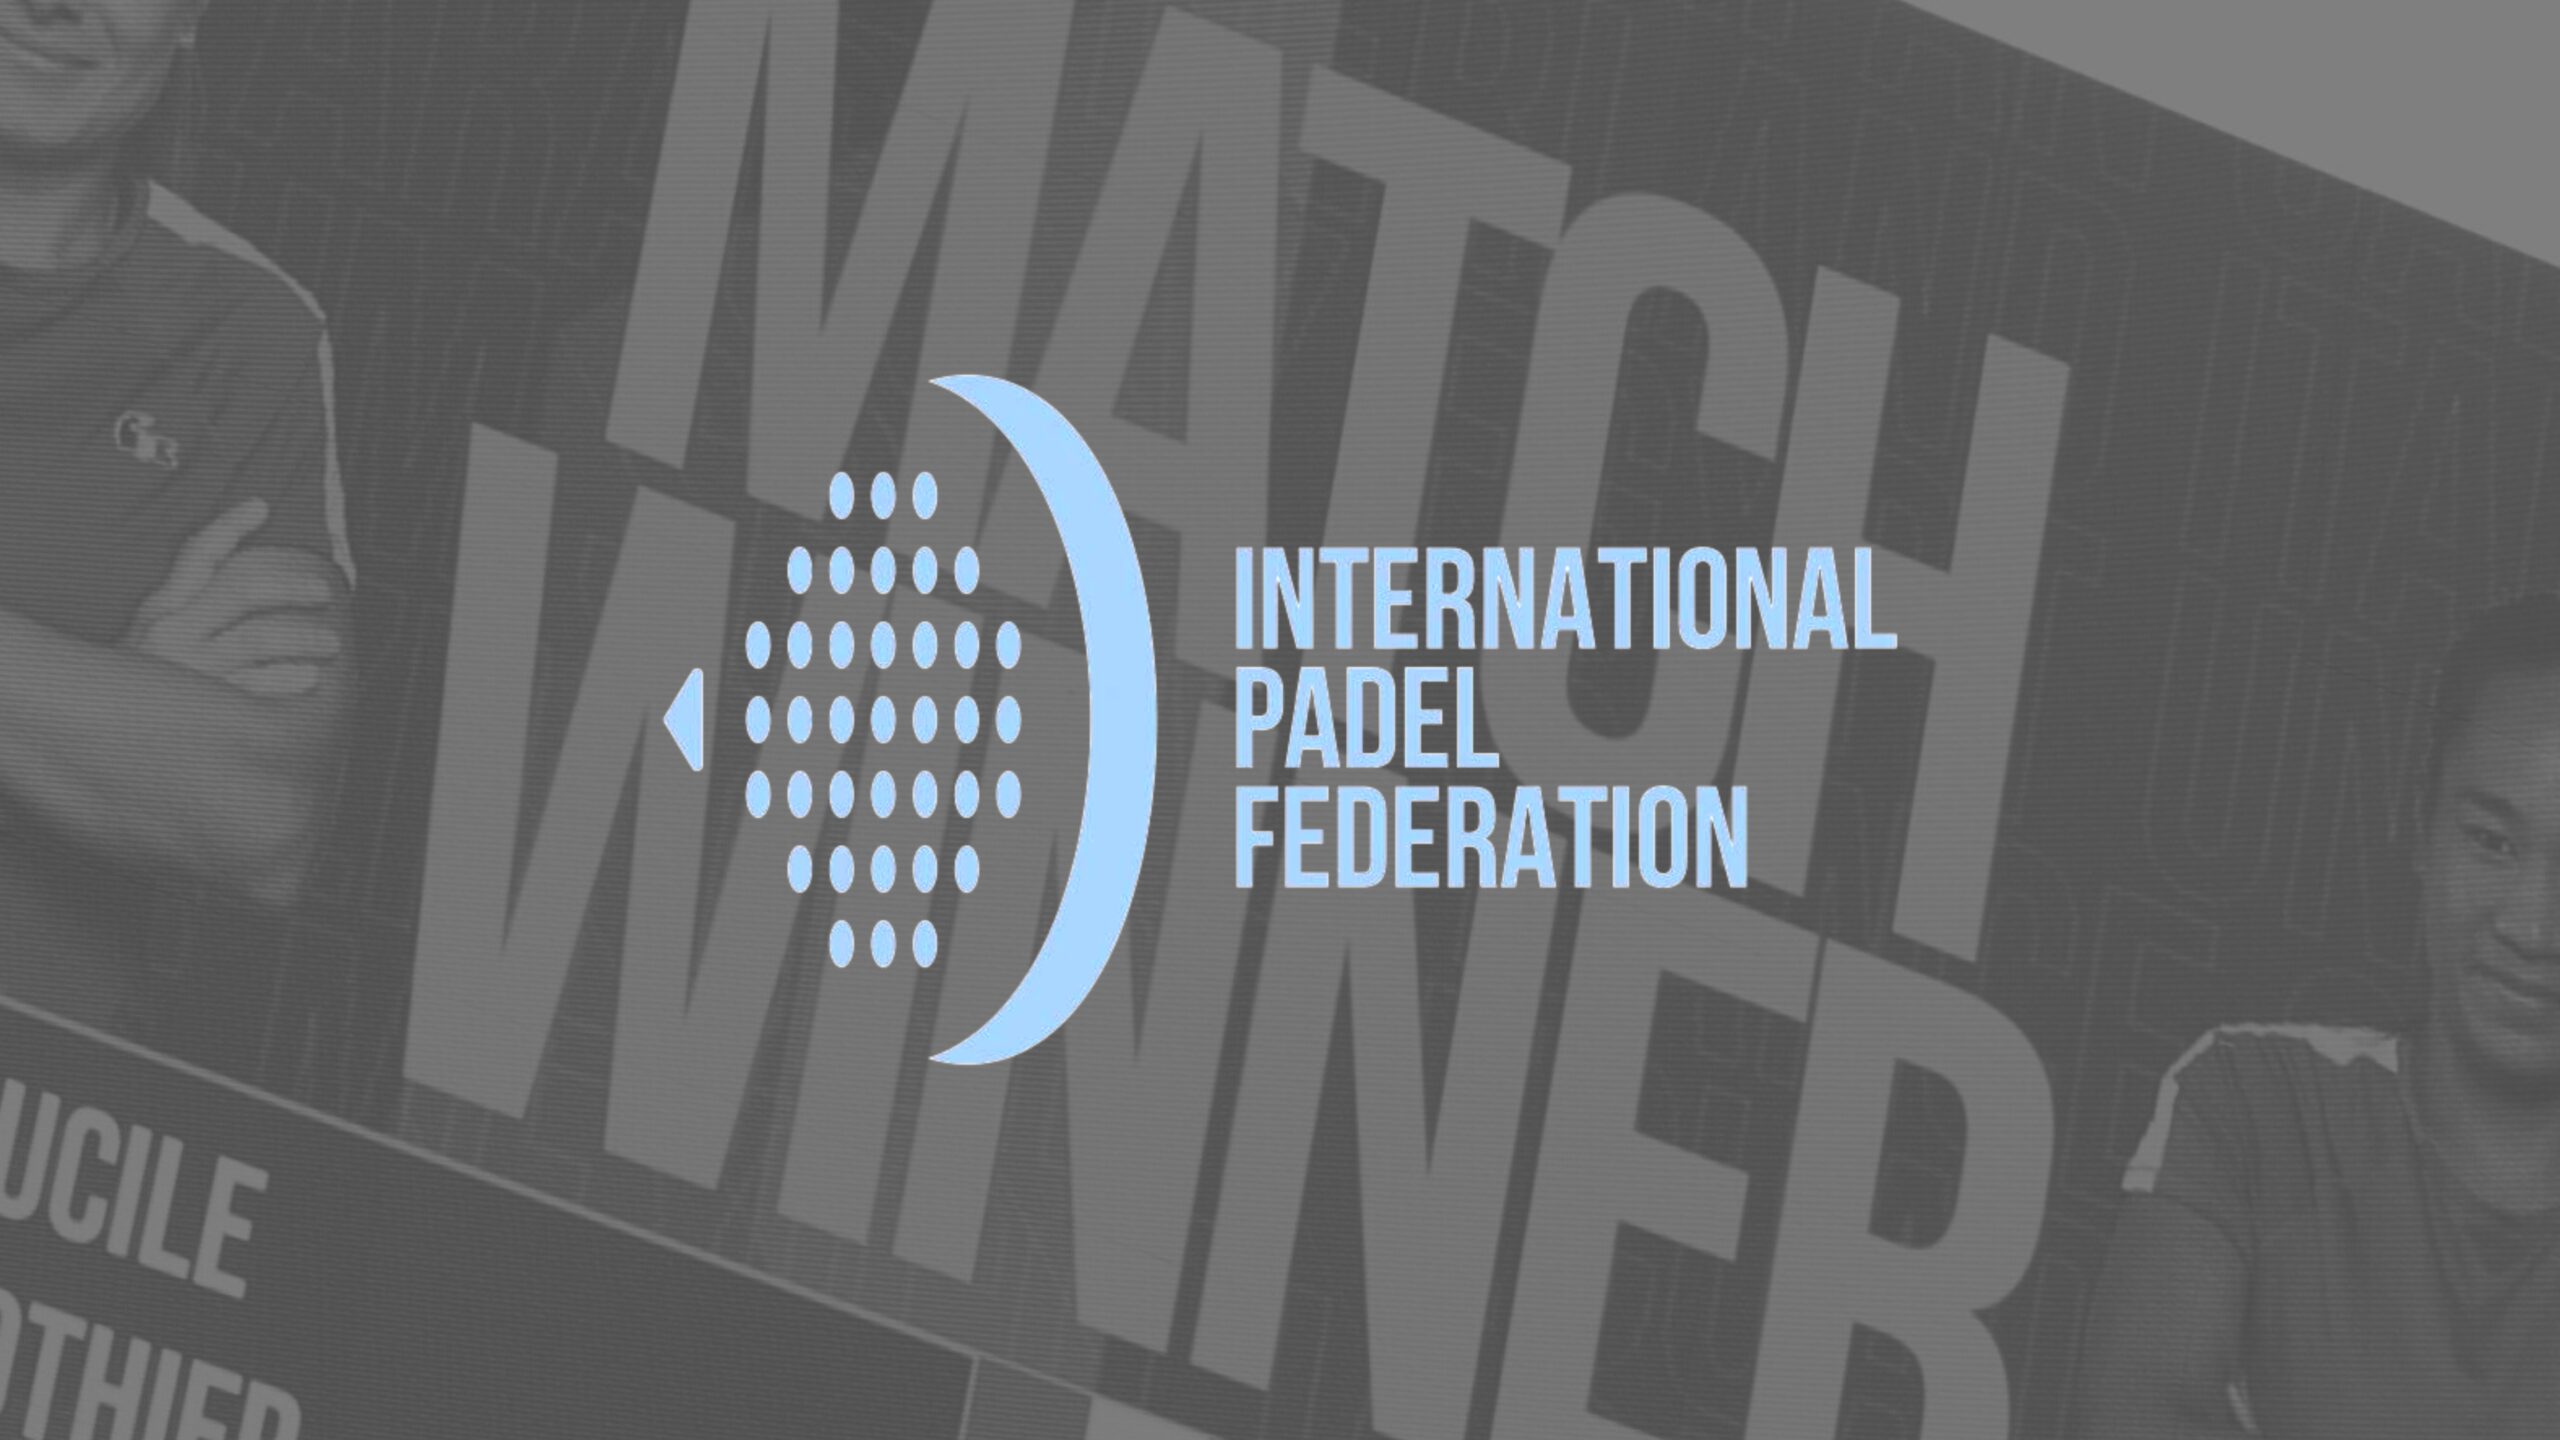 “De poging tot overname van de padel door de ITF afgewezen door de internationale tennisgemeenschap”